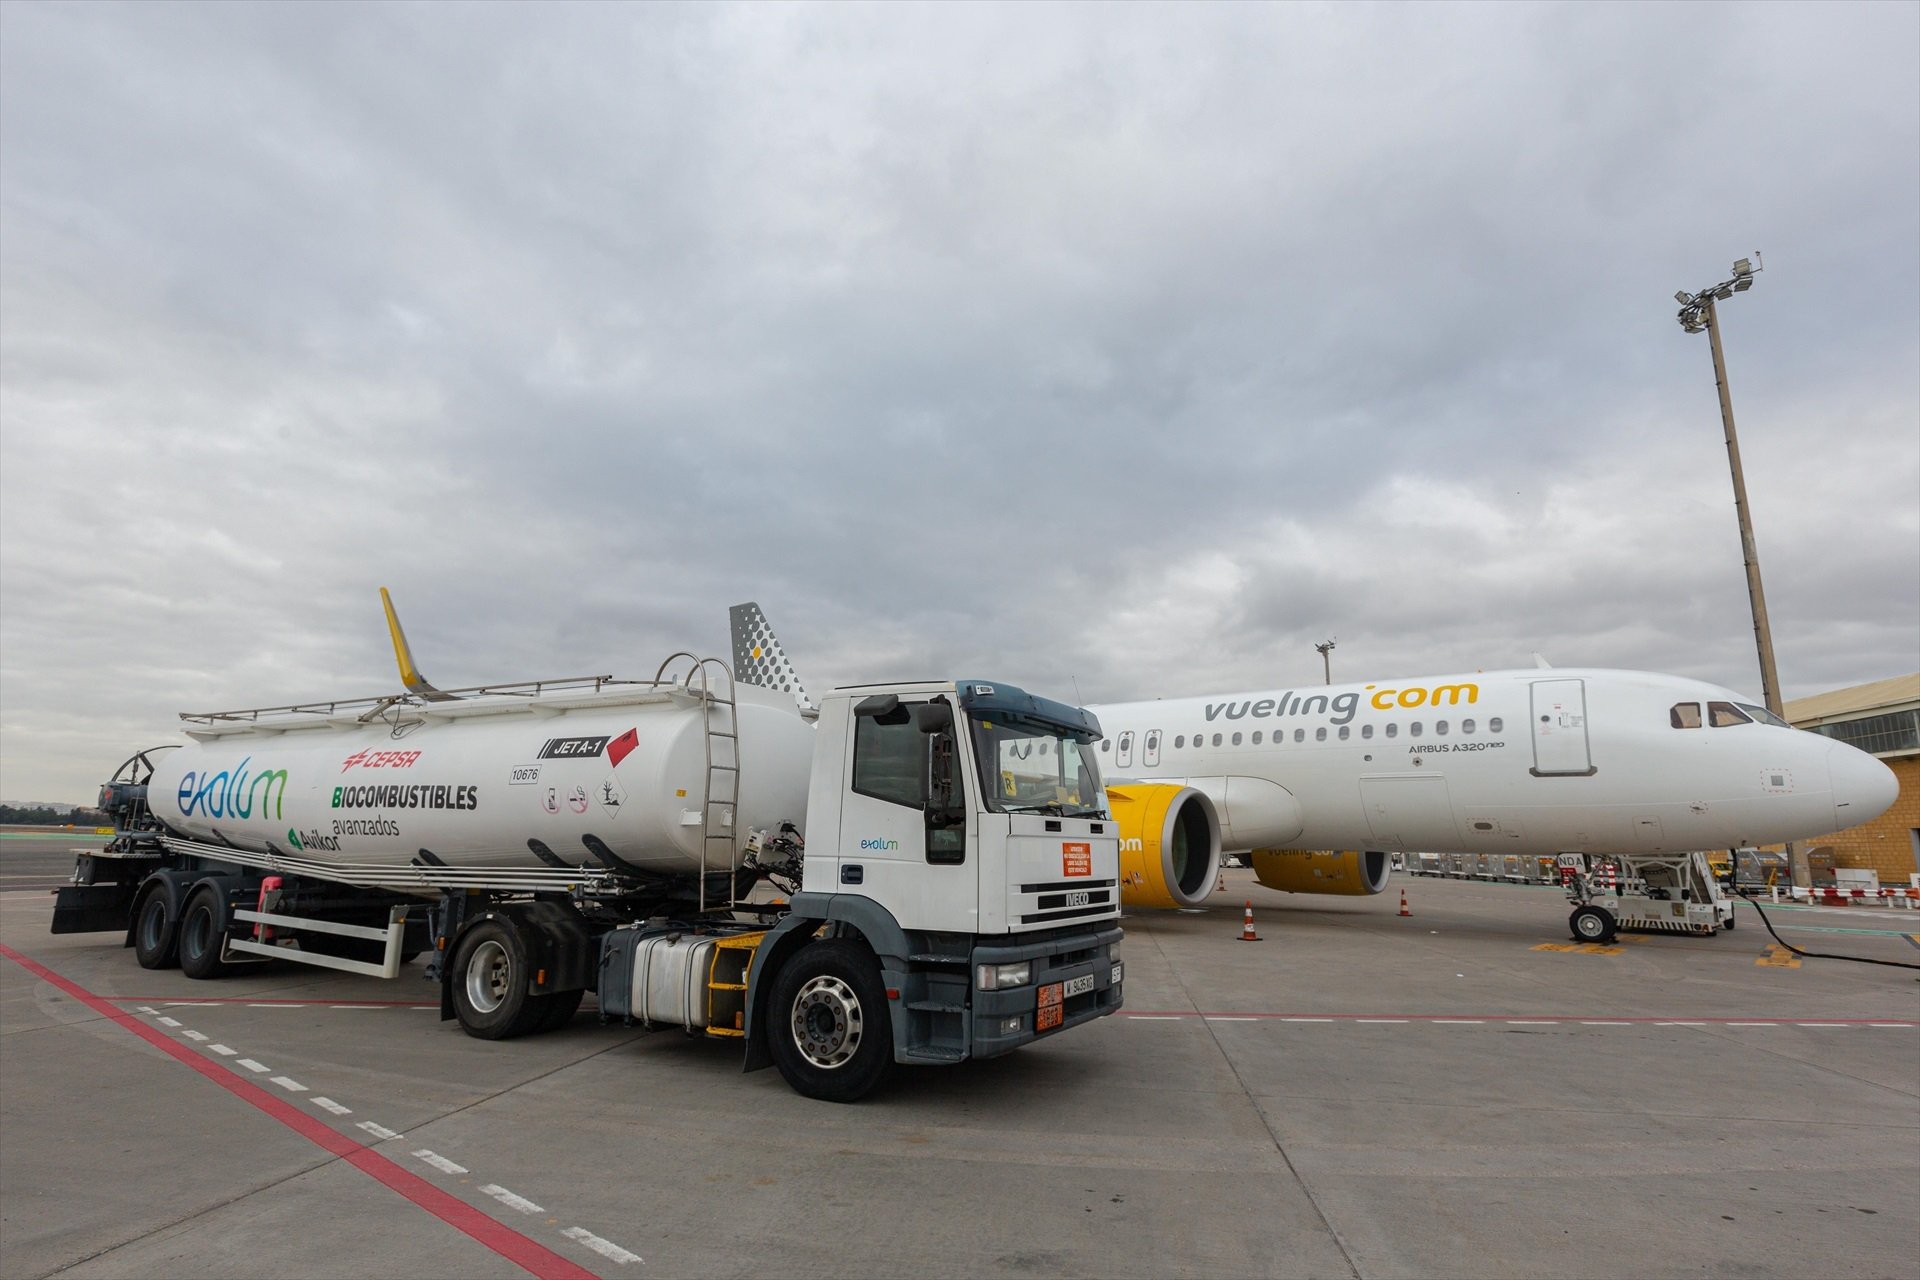 Vaga de Vueling: cancel·lats 36 vols aquest diumenge a l'aeroport de Barcelona